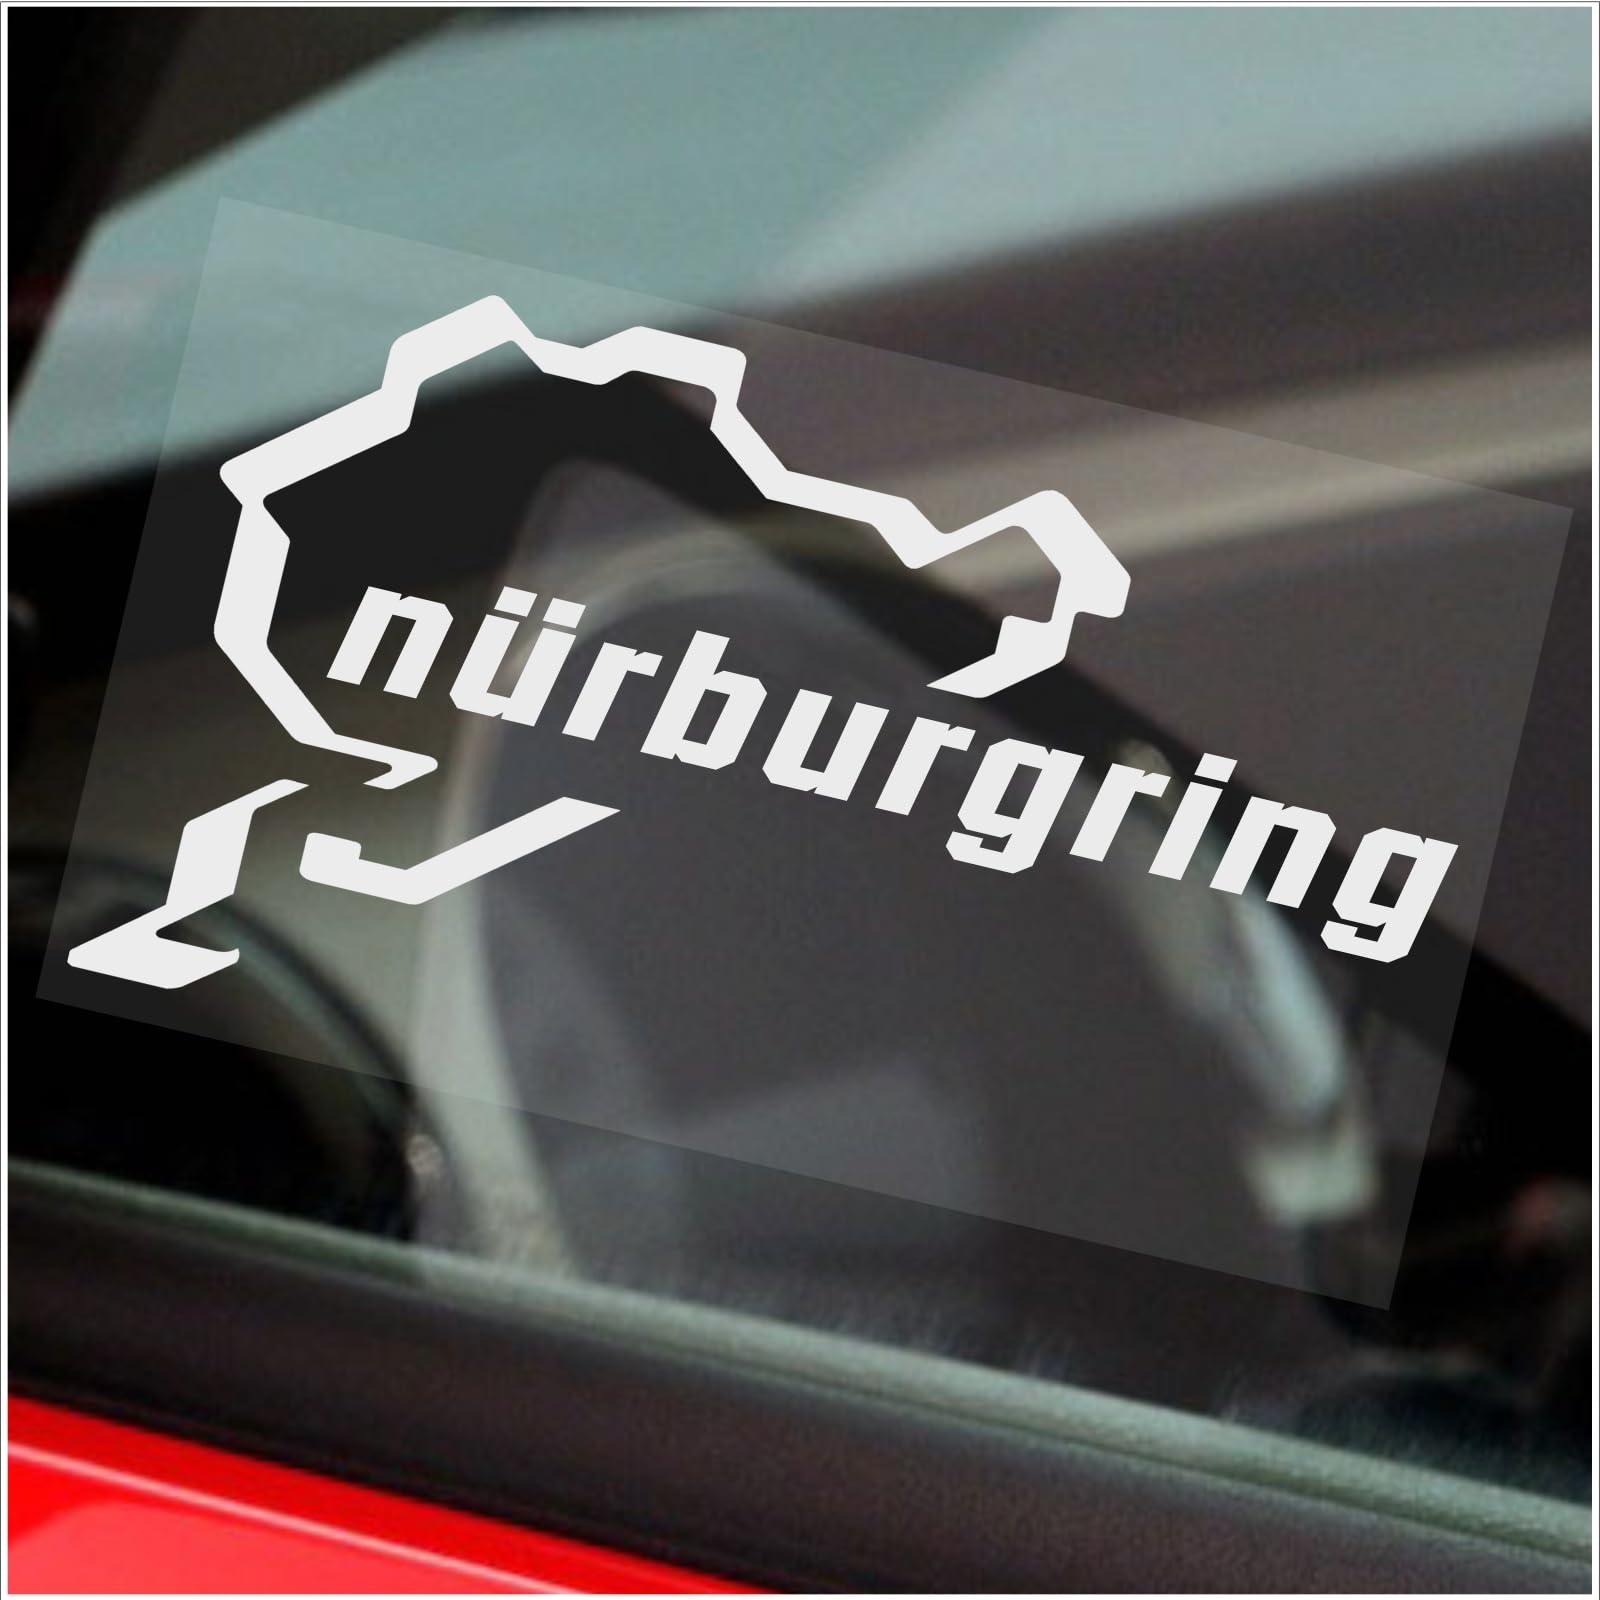 Nürburgring Stickerauto, Van, Fenster, Rennstrecke, F1,F4,M3,M4, Racer, Turbo, Treiber, Fahren,V8,GTI, R, GTR, Strecker 140 mm x 80 mm von Platinum Place